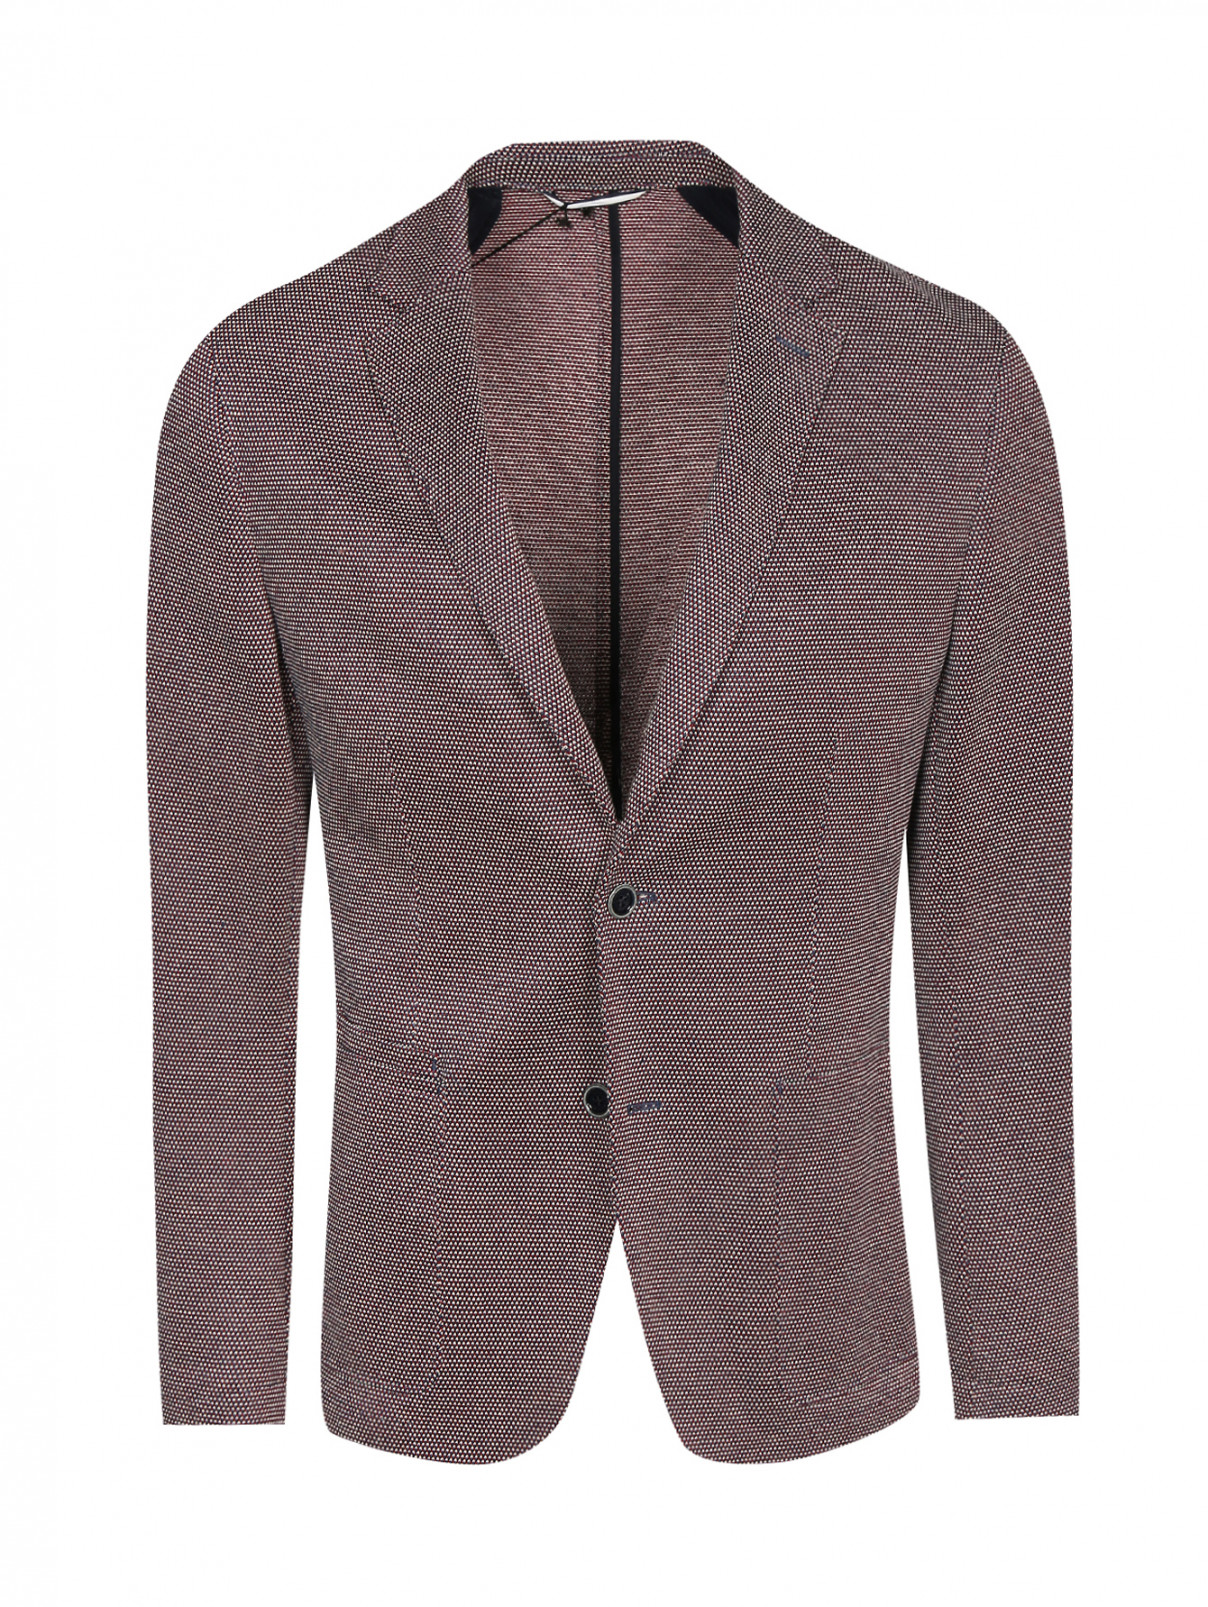 Пиджак однобортный из шерсти и льна Hugo Boss  –  Общий вид  – Цвет:  Красный